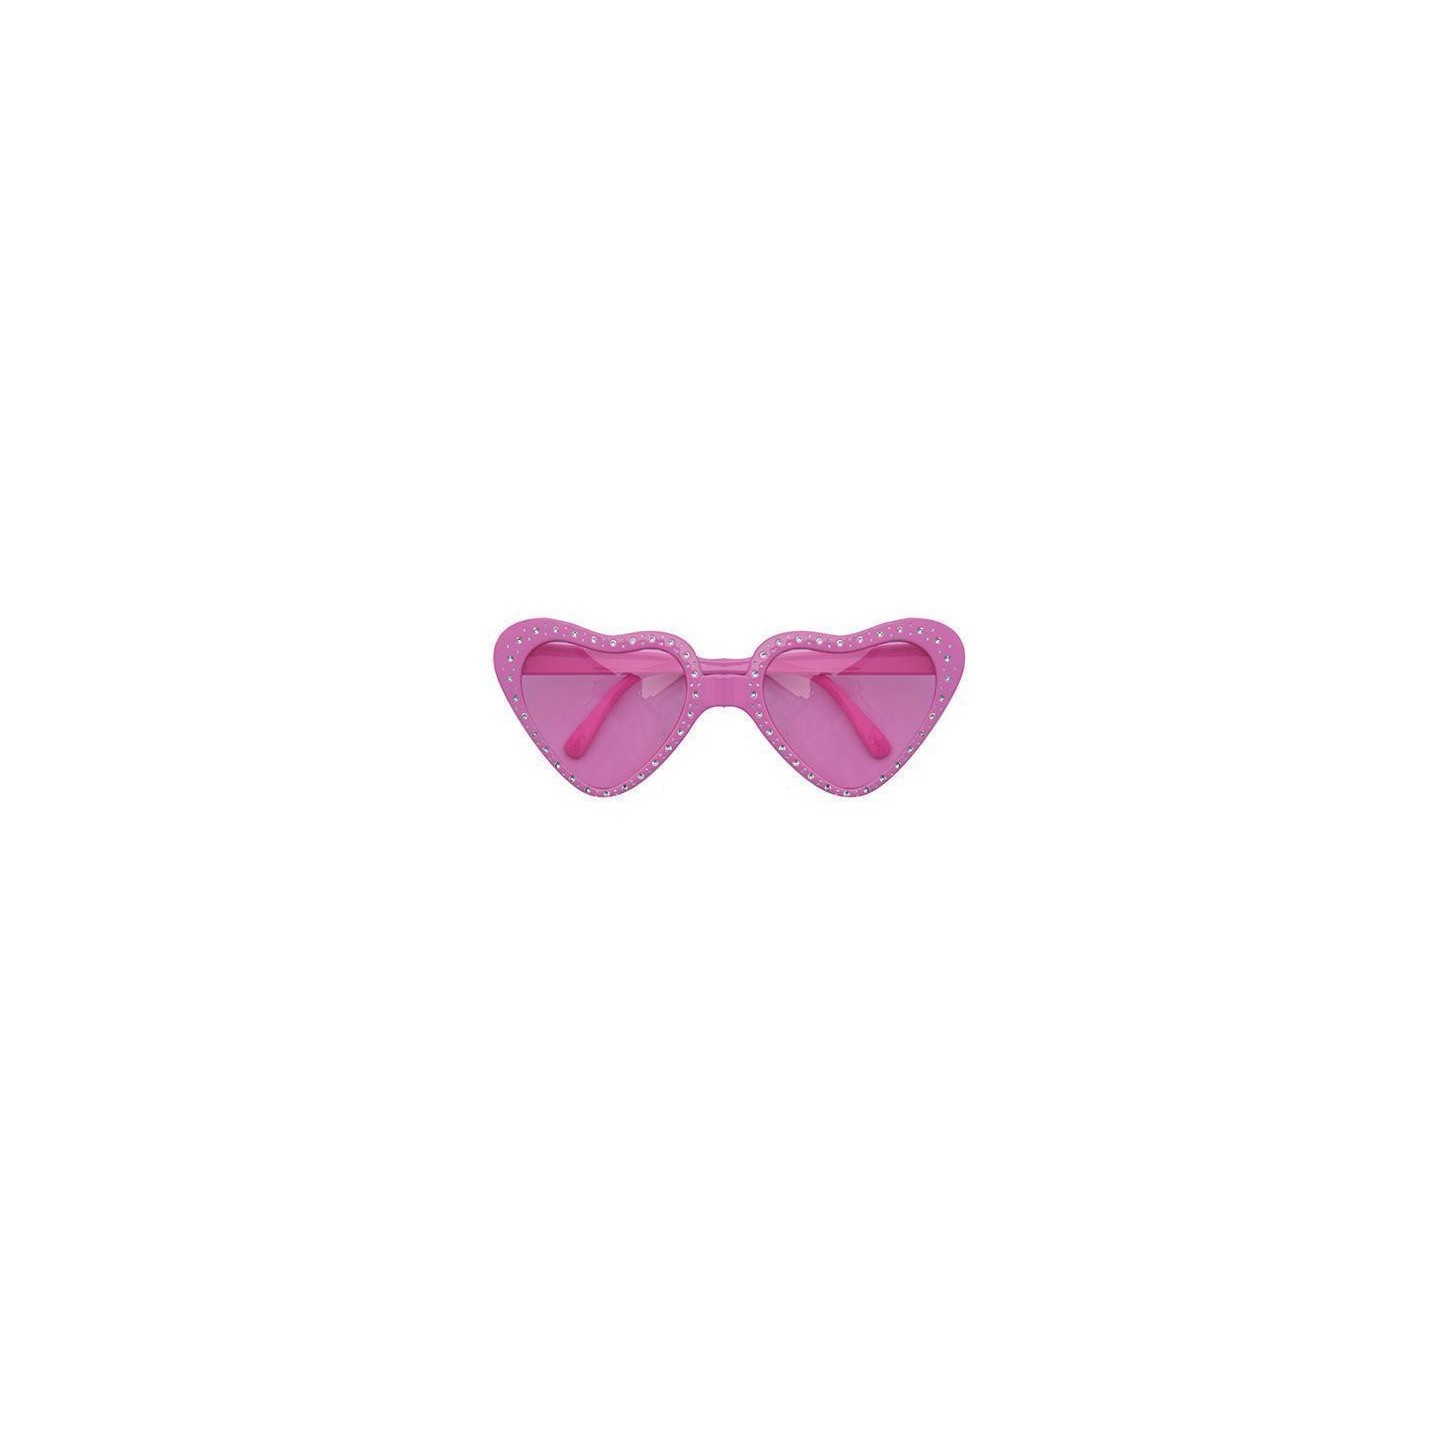 hartjes bril carnaval feestbril roze